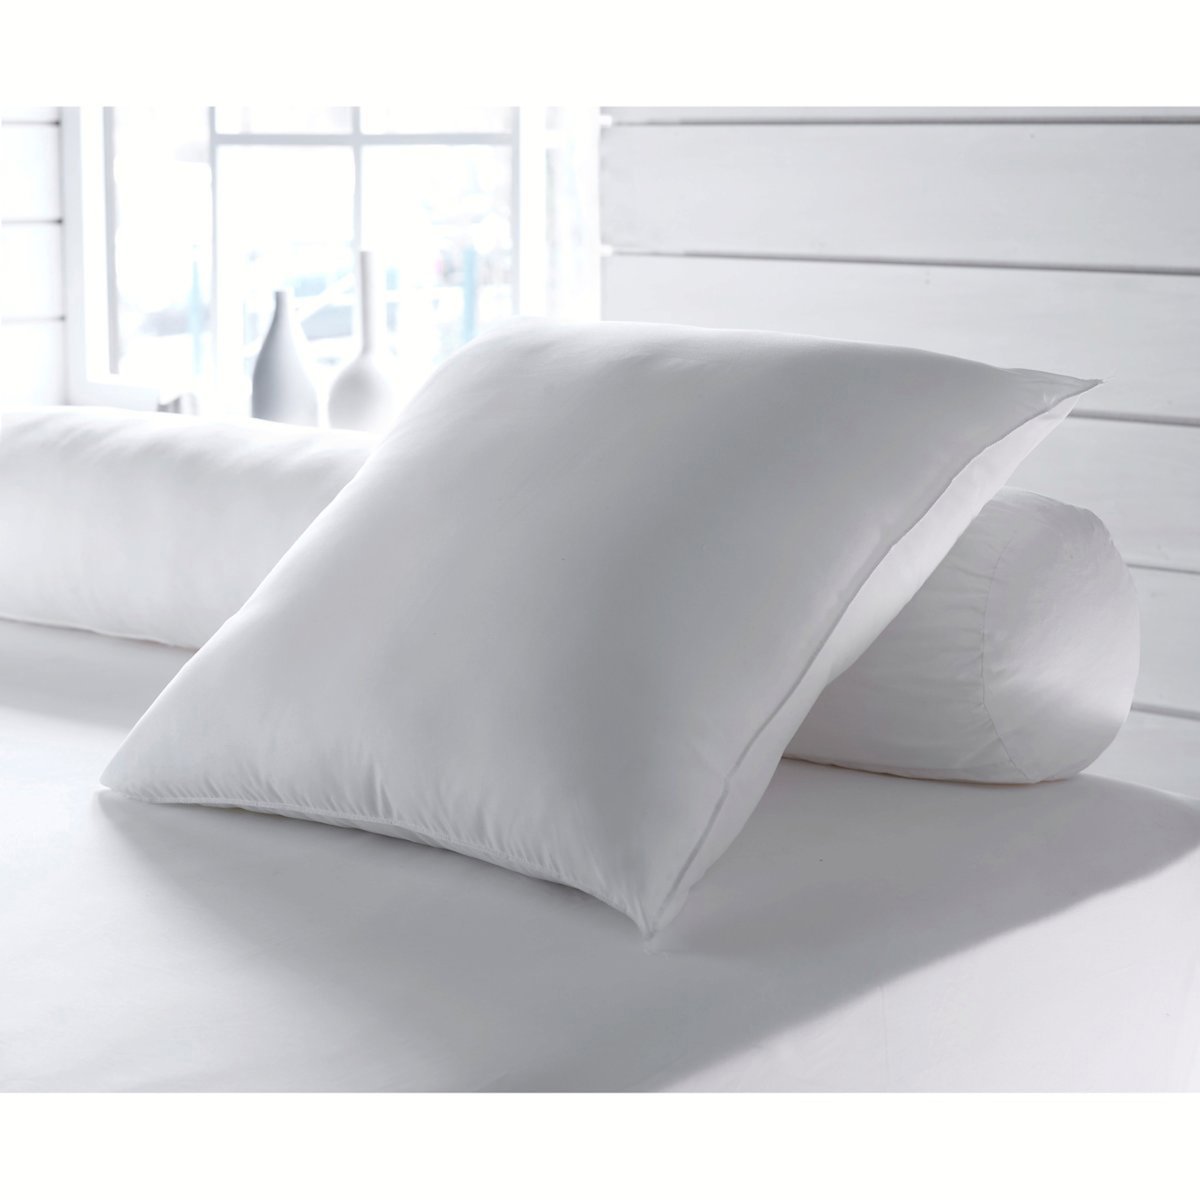 Одеяло La Redoute Экологичное синтетическое с обработкой против клещей Proneem стандартное качество 140 x 200 см белый, размер 140 x 200 см - фото 2